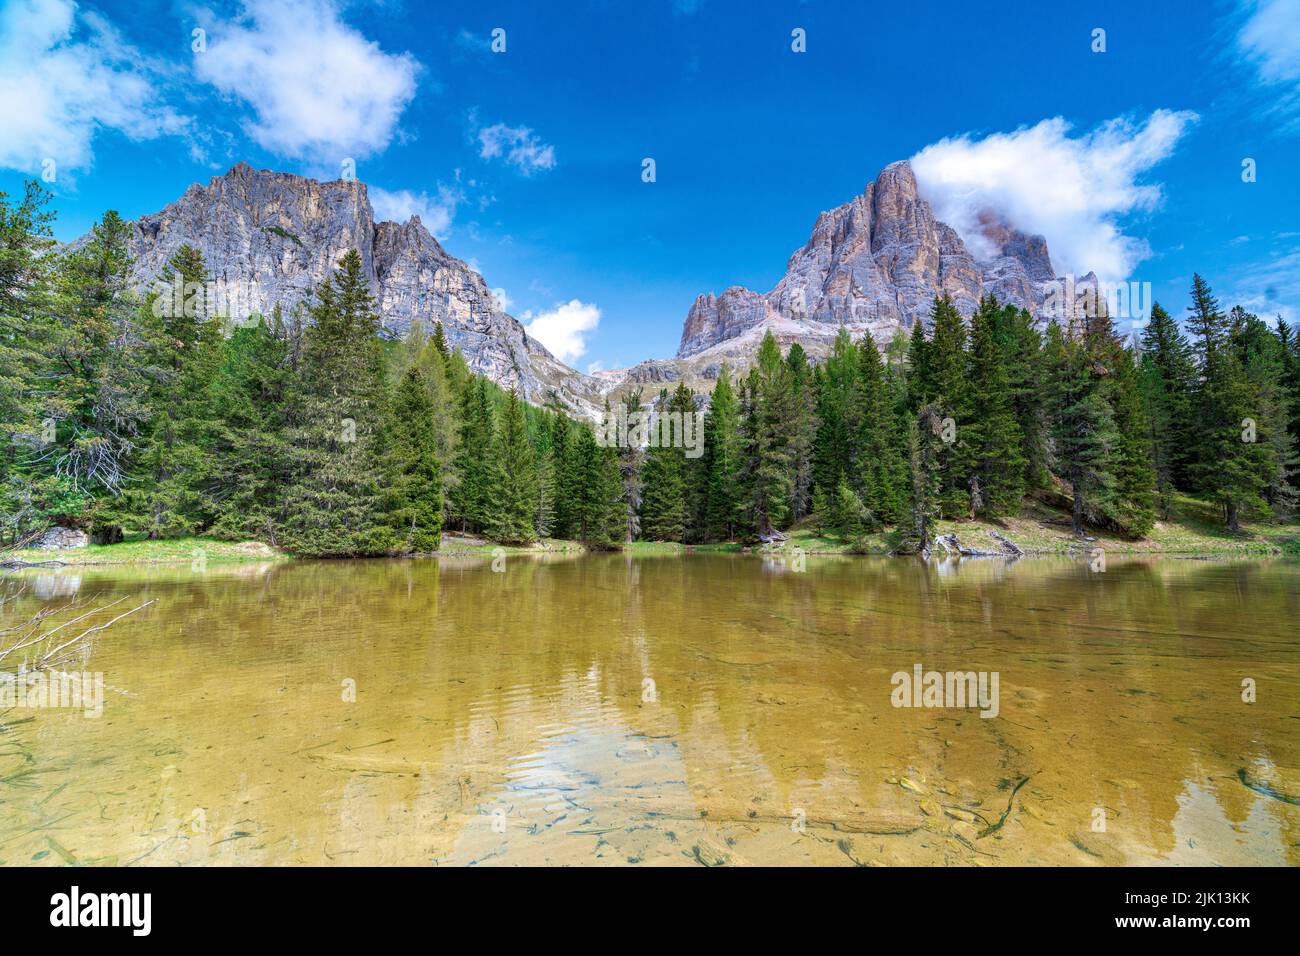 Der majestätische Gipfel des Tofana di Rozes spiegelt sich im klaren Wasser des Bai De Dones-Sees, der Dolomiten, des Lagazuoi-Passes, Veneto, Italien, Europa Stockfoto